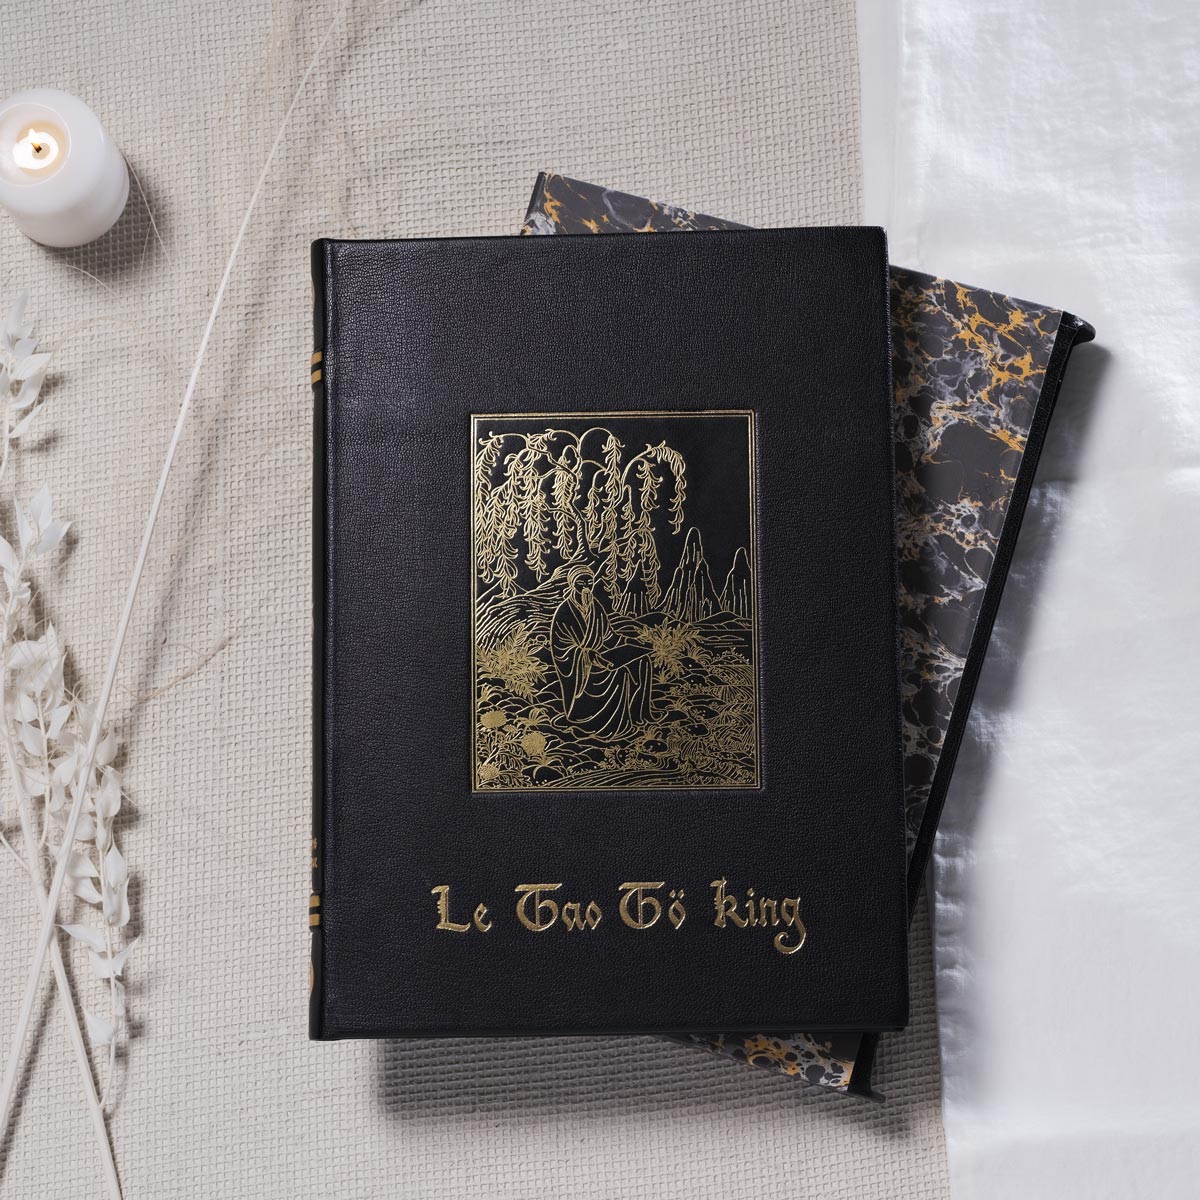 Tao Tö King livre de collection édition LARROQUE exemplaire Luxe